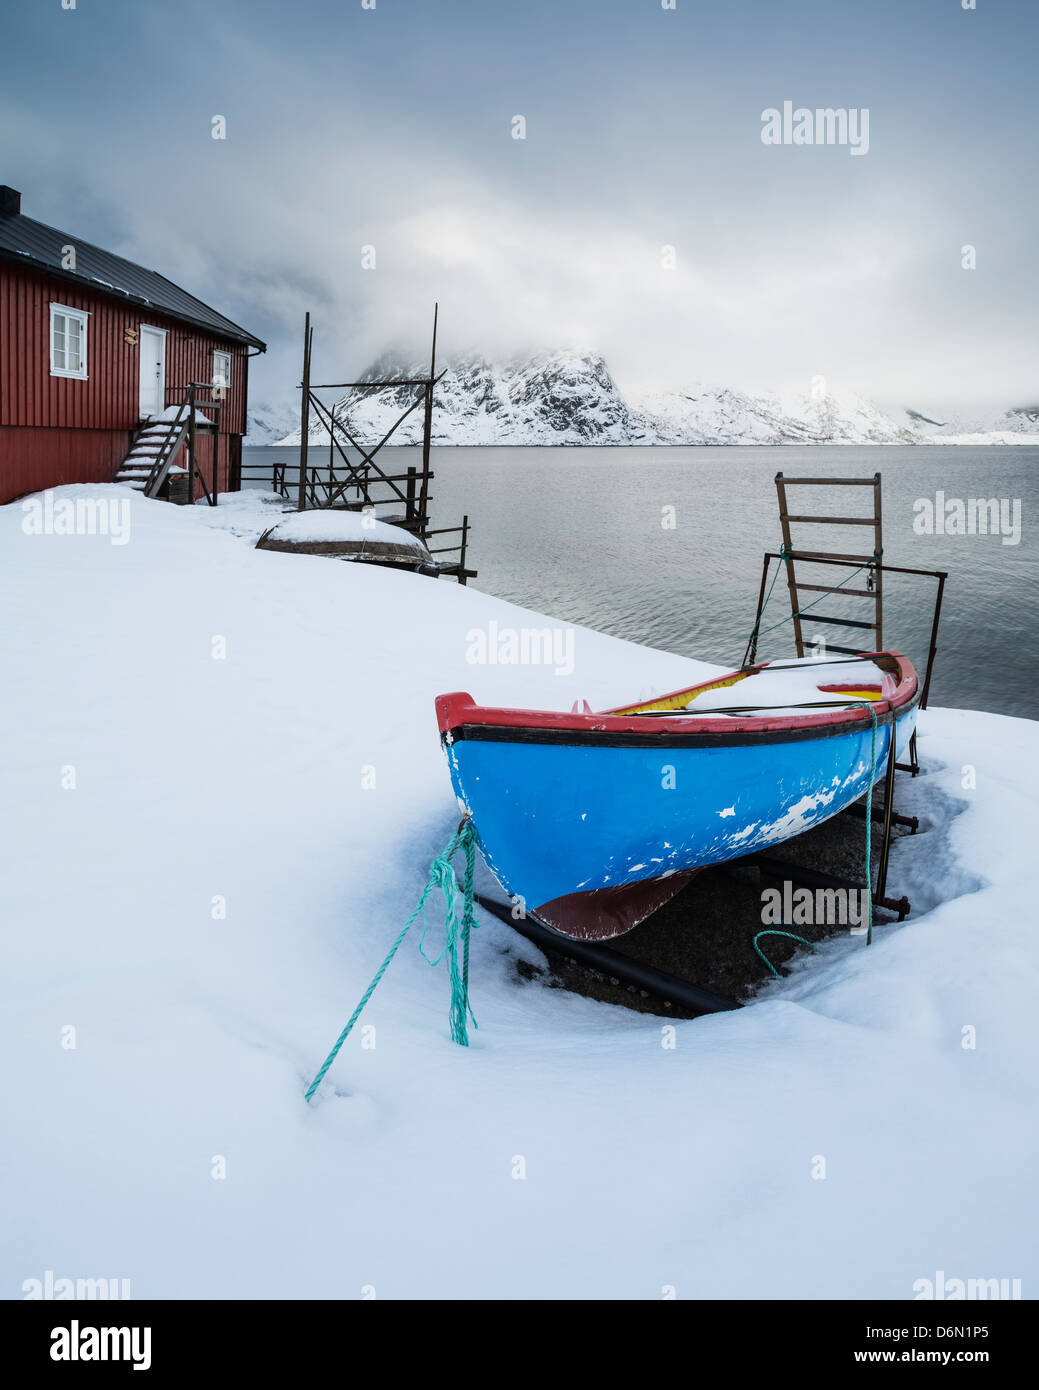 Piccola barca a remi circondato da neve fuori dai tradizionali Rorbu cabina, Toppøya, Moskenesøy, Isole Lofoten in Norvegia Foto Stock